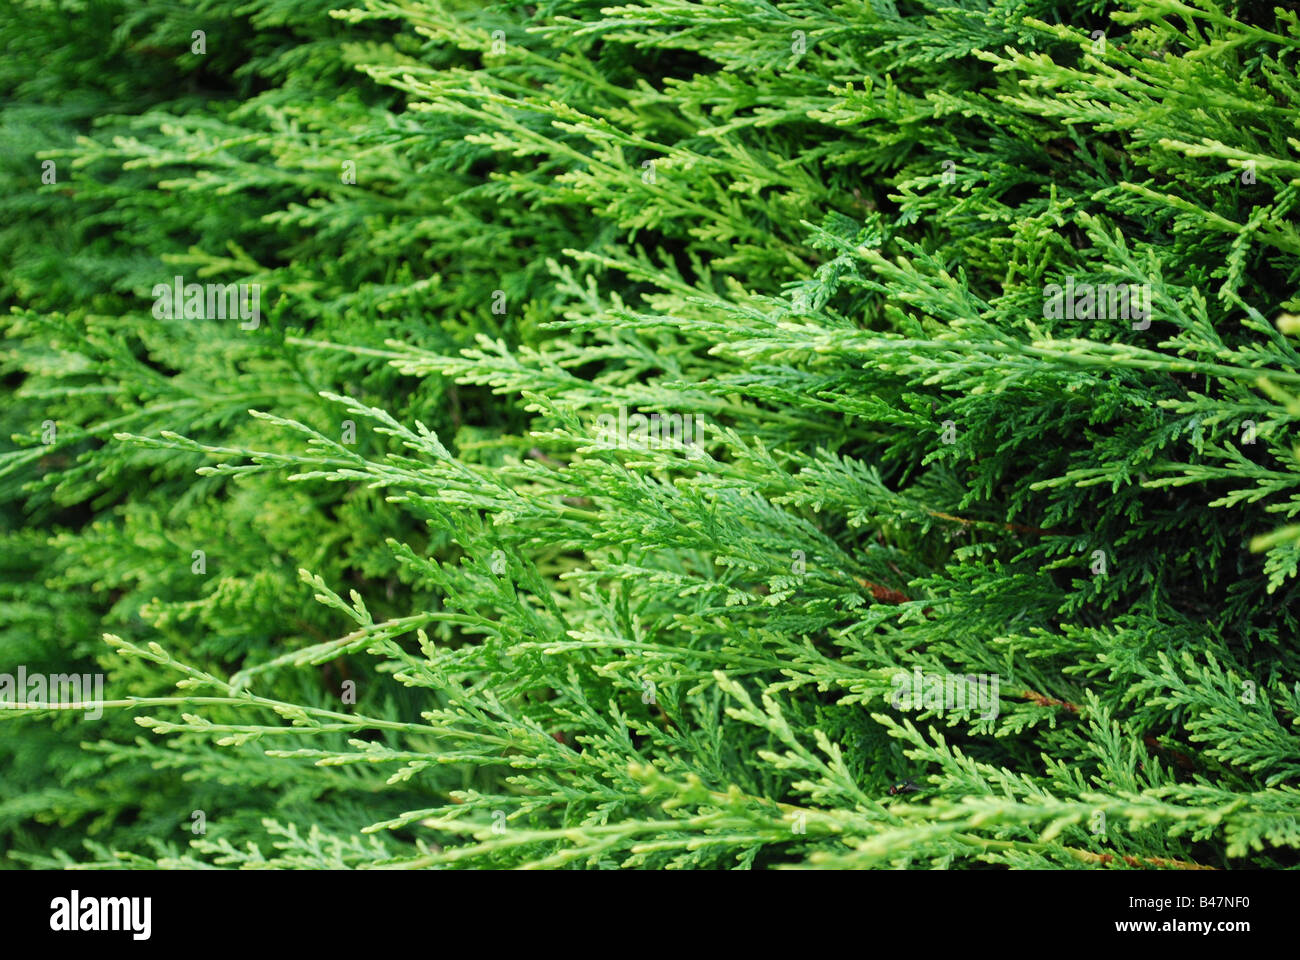 Leylandii hedge Stock Photo